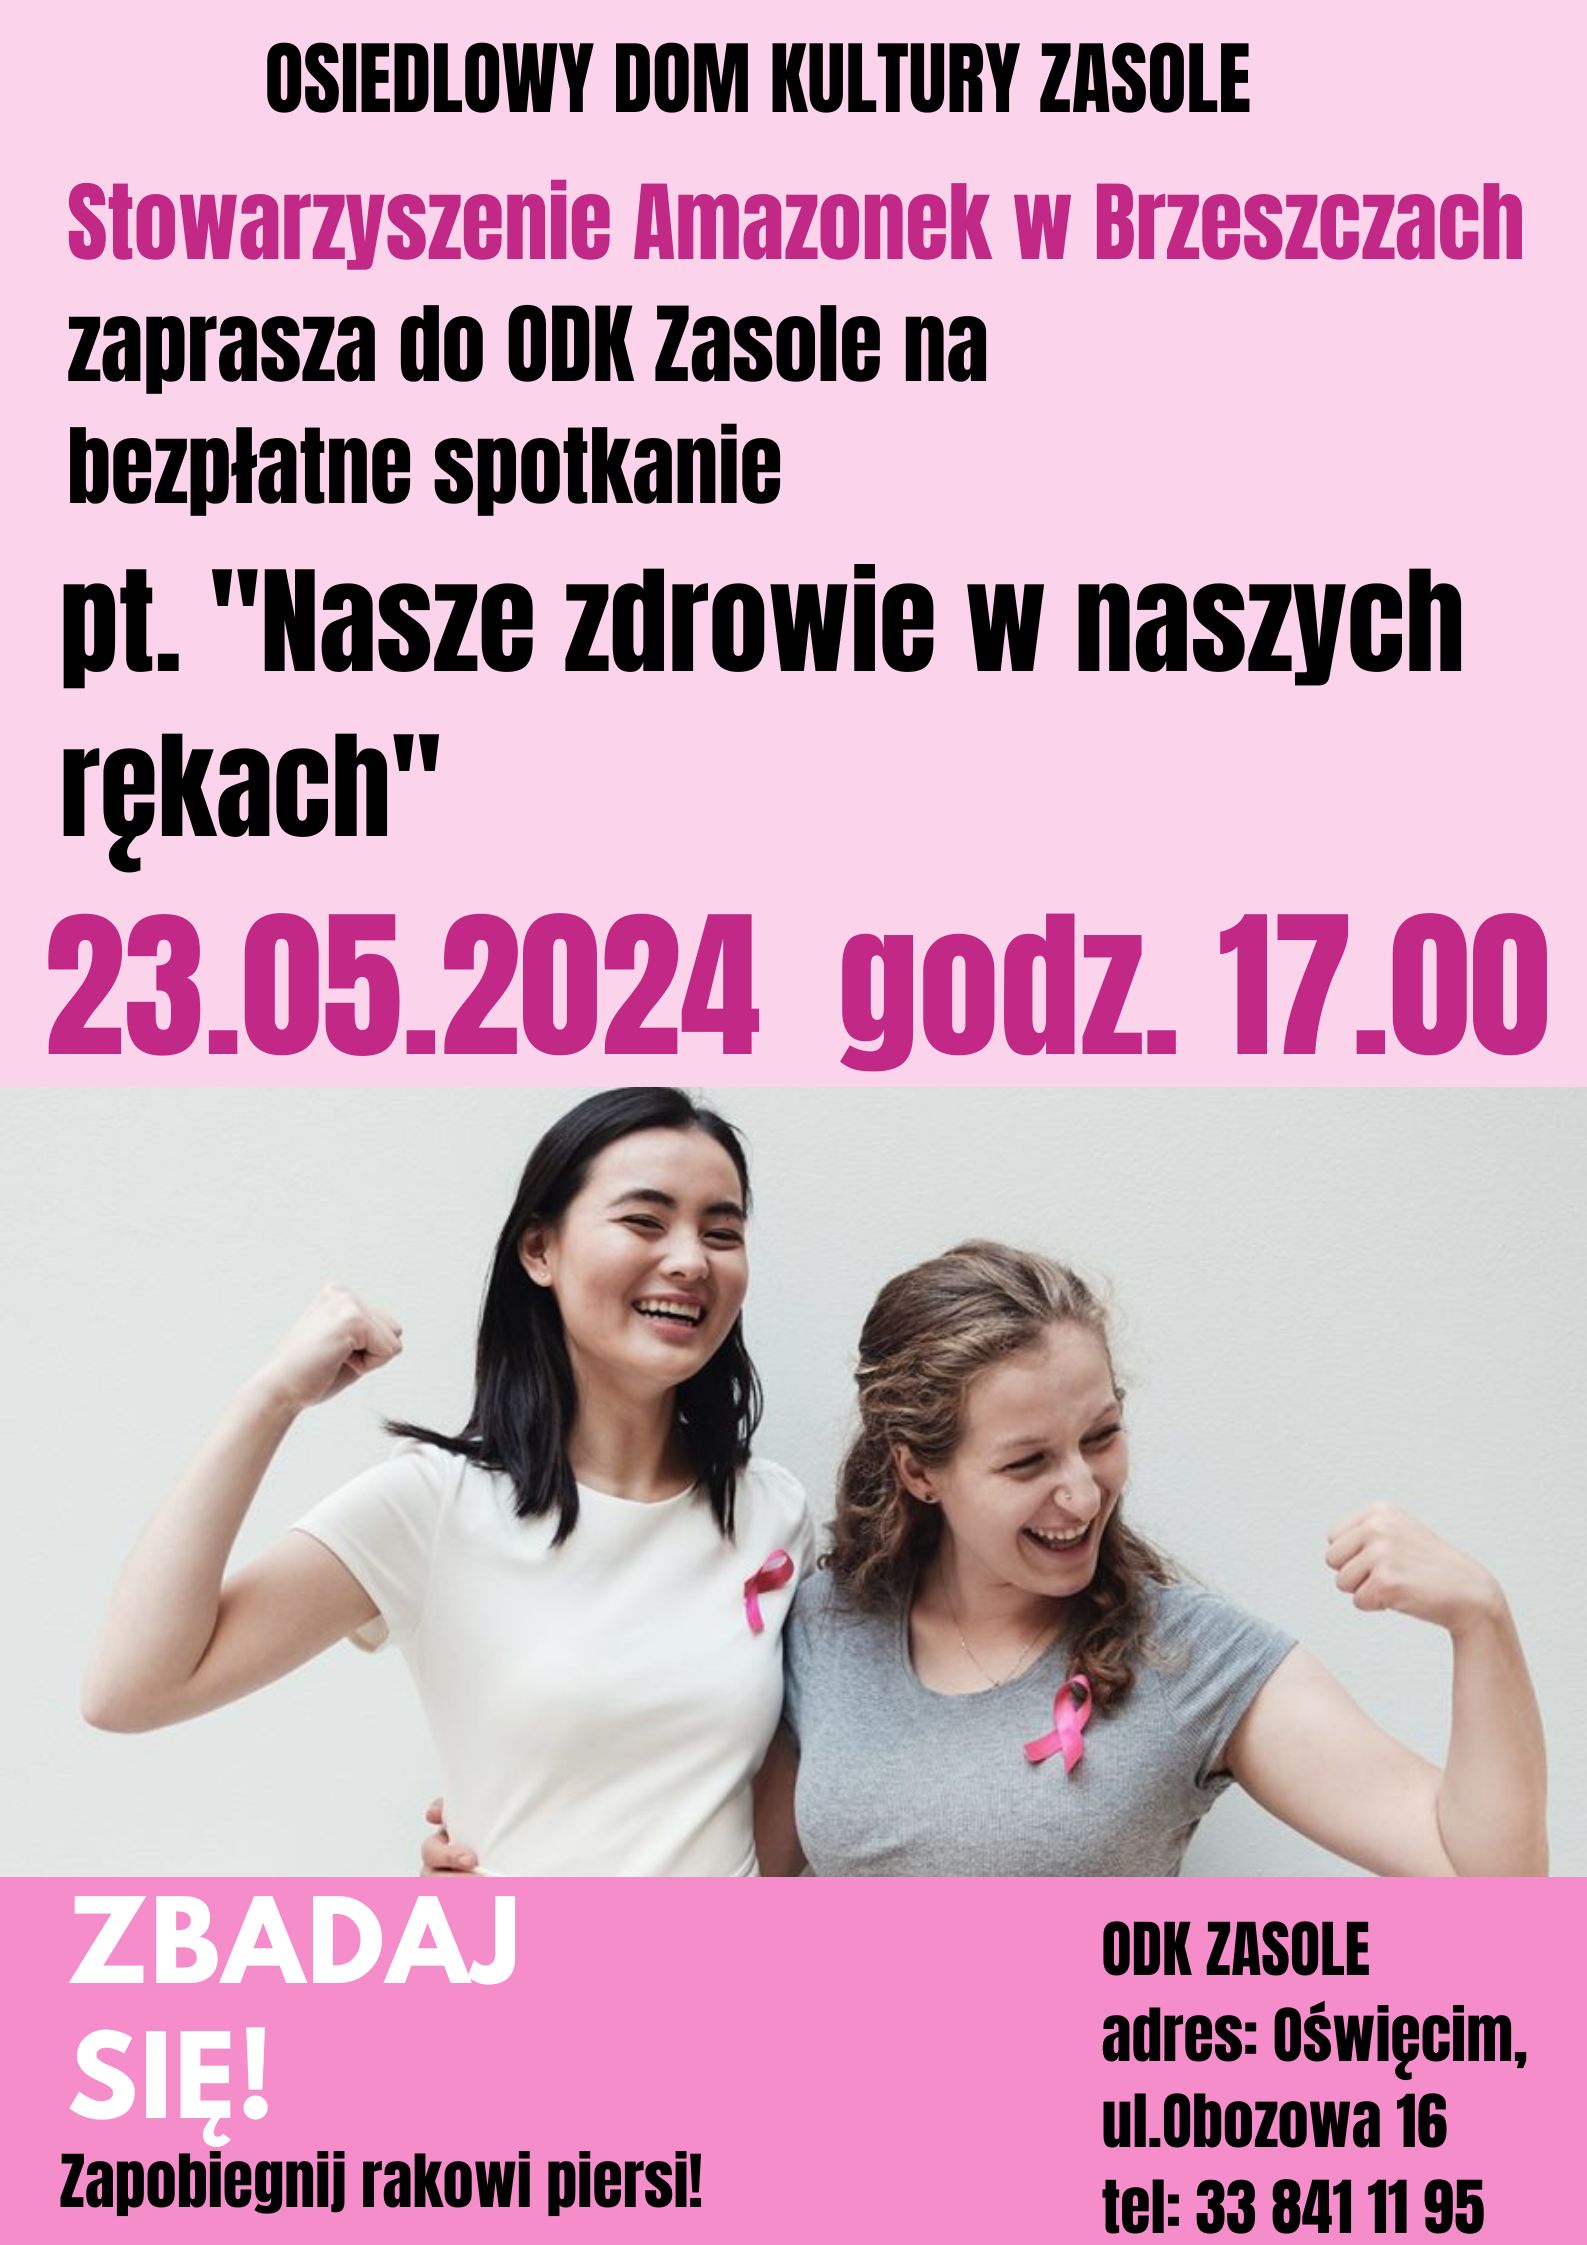 różowy plakat ze zdjęciem dwóch kobiet z różową wstążką i informacjami o spotkaniu.